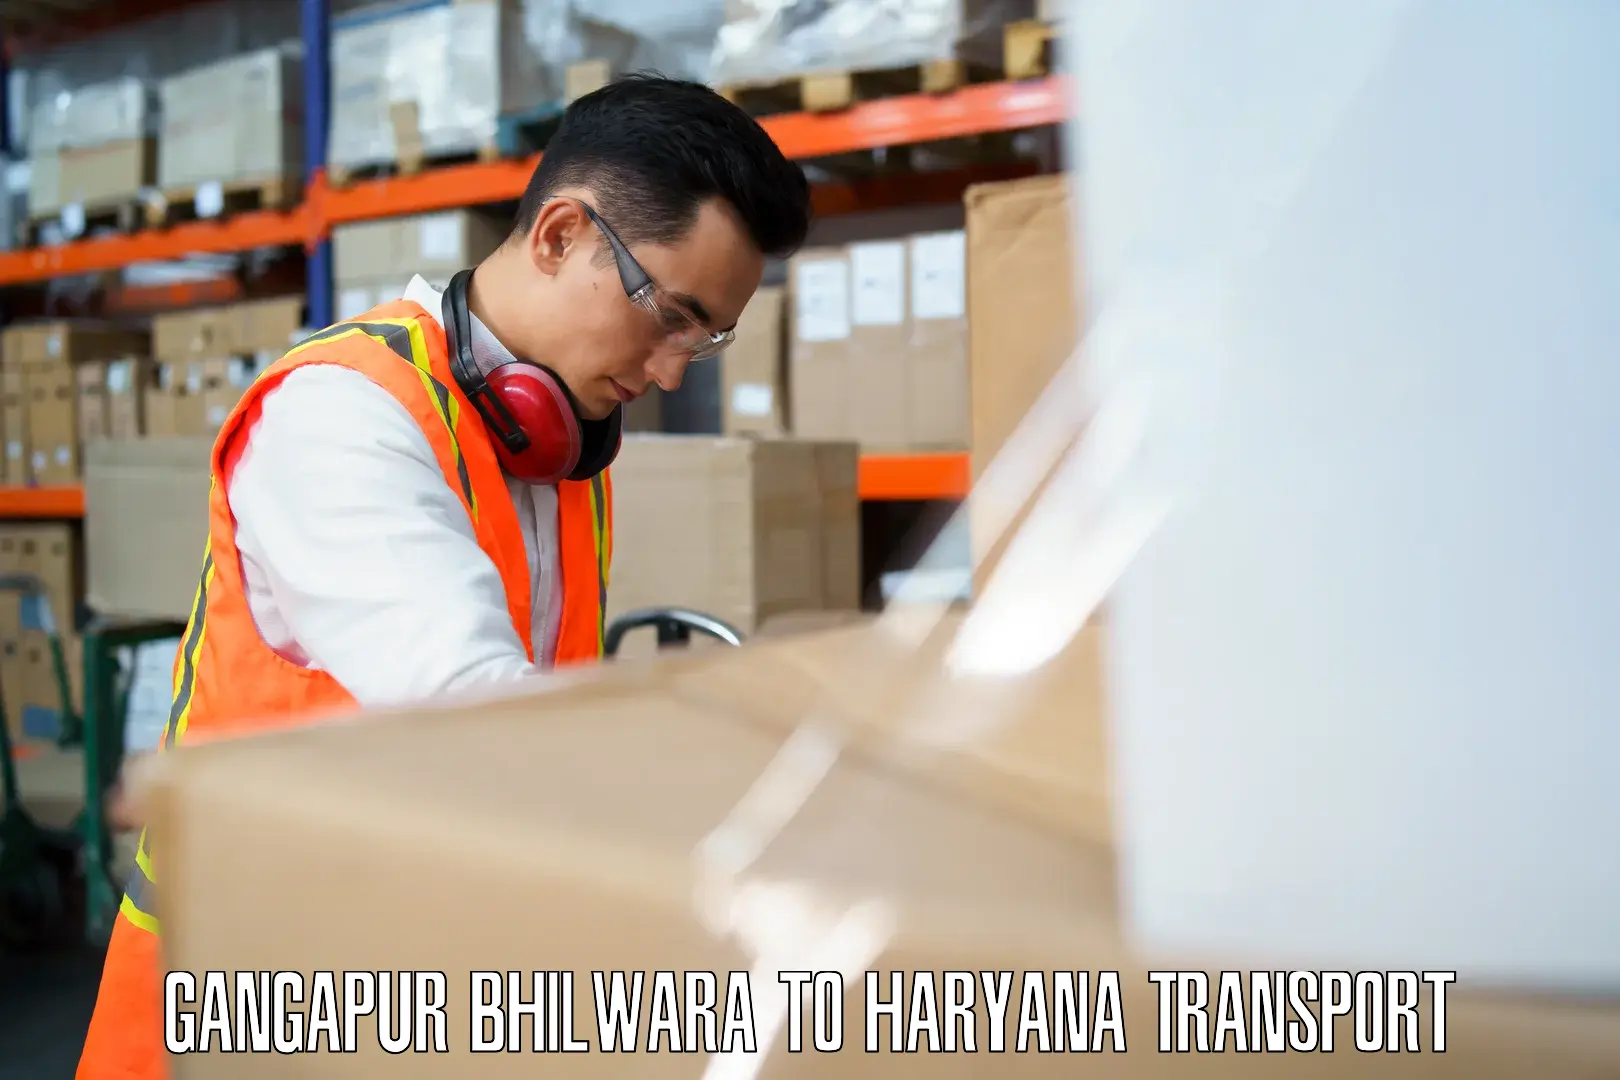 Shipping partner Gangapur Bhilwara to NCR Haryana